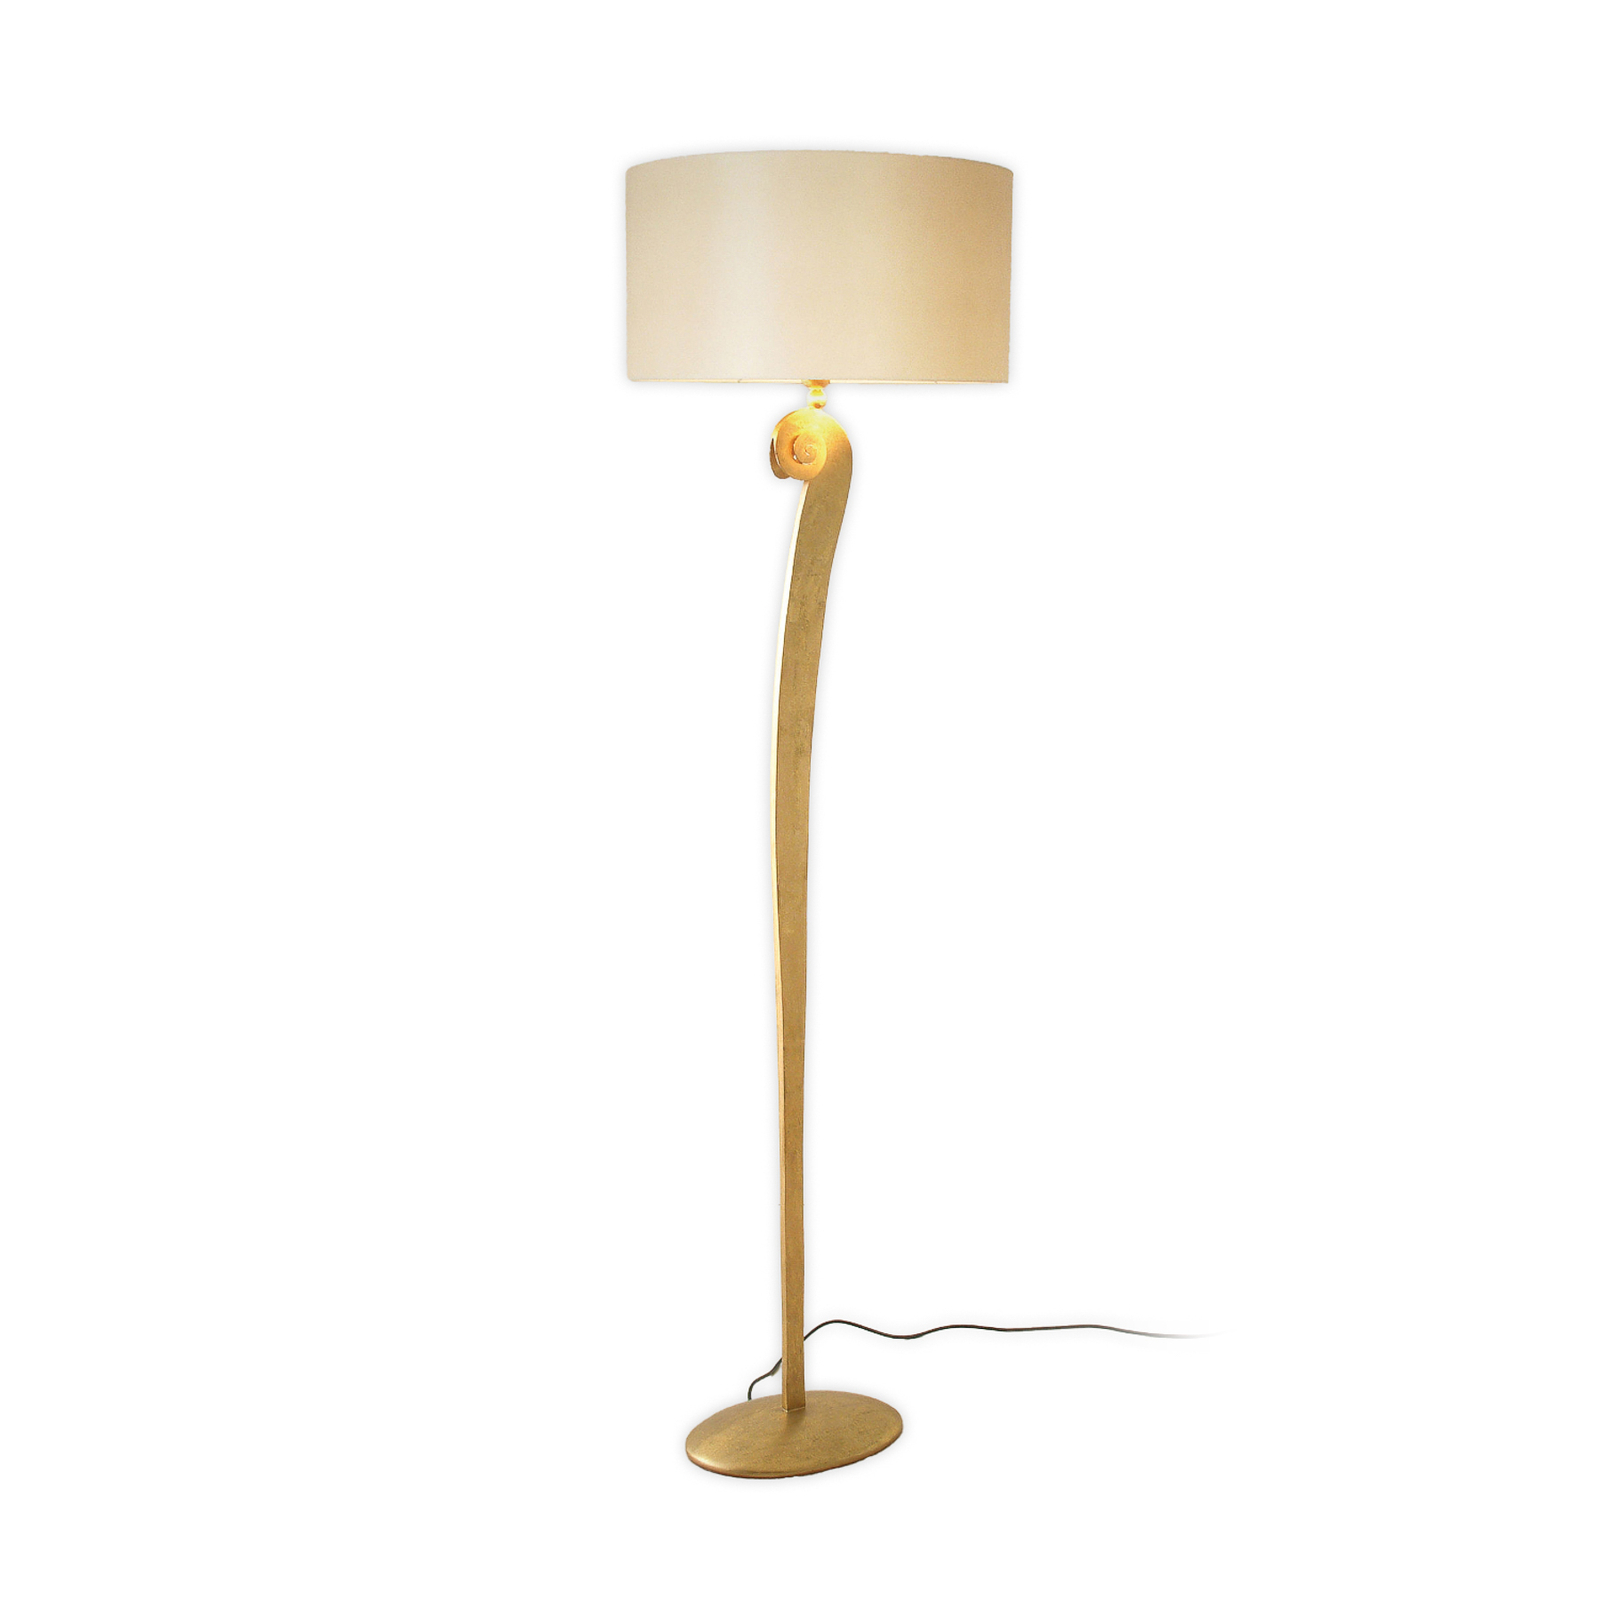 Lino vloerlamp, goudkleurig/ecru, hoogte 160 cm, ijzer